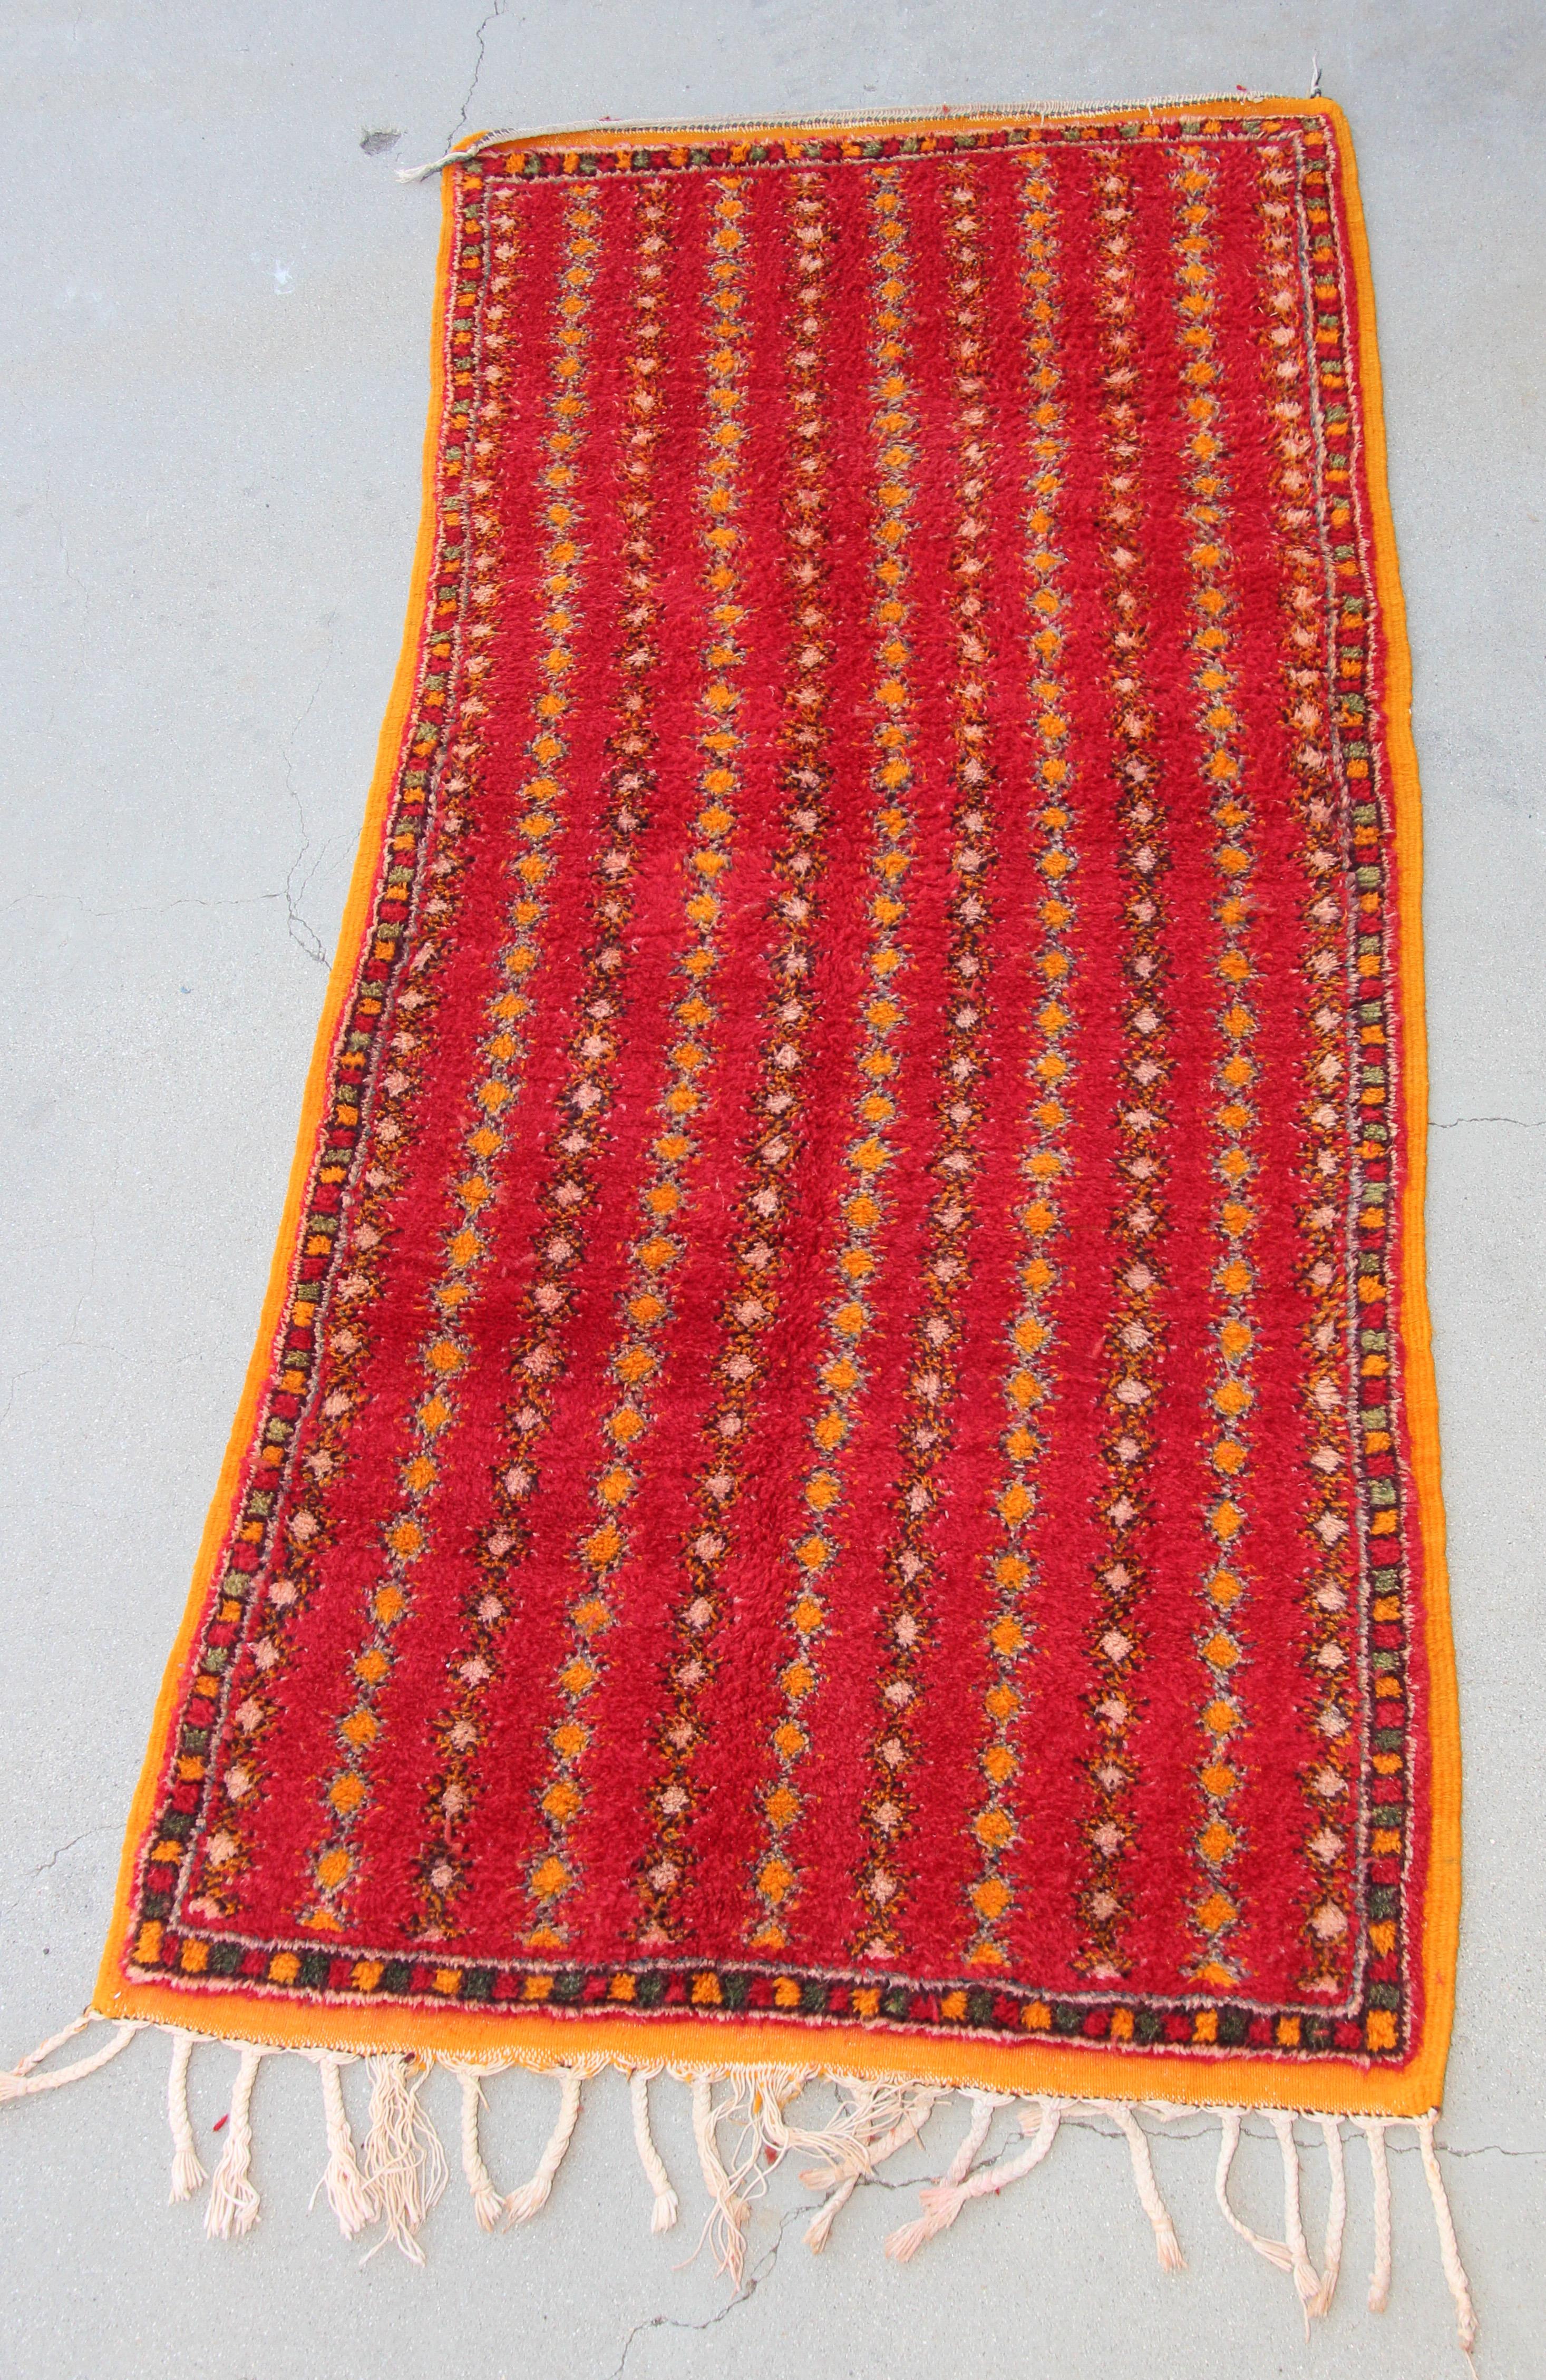 Marokkanischer Vintage-Stammesteppich, handgewebt von marokkanischen Berberfrauen aus Bio-Lammwolle und Bio-Farbe.
Nordafrikanischer marokkanischer Stammesläufer mit niedrigem Flor aus handgewebter Wolle, handgeknüpft von den Berberstämmen Marokkos